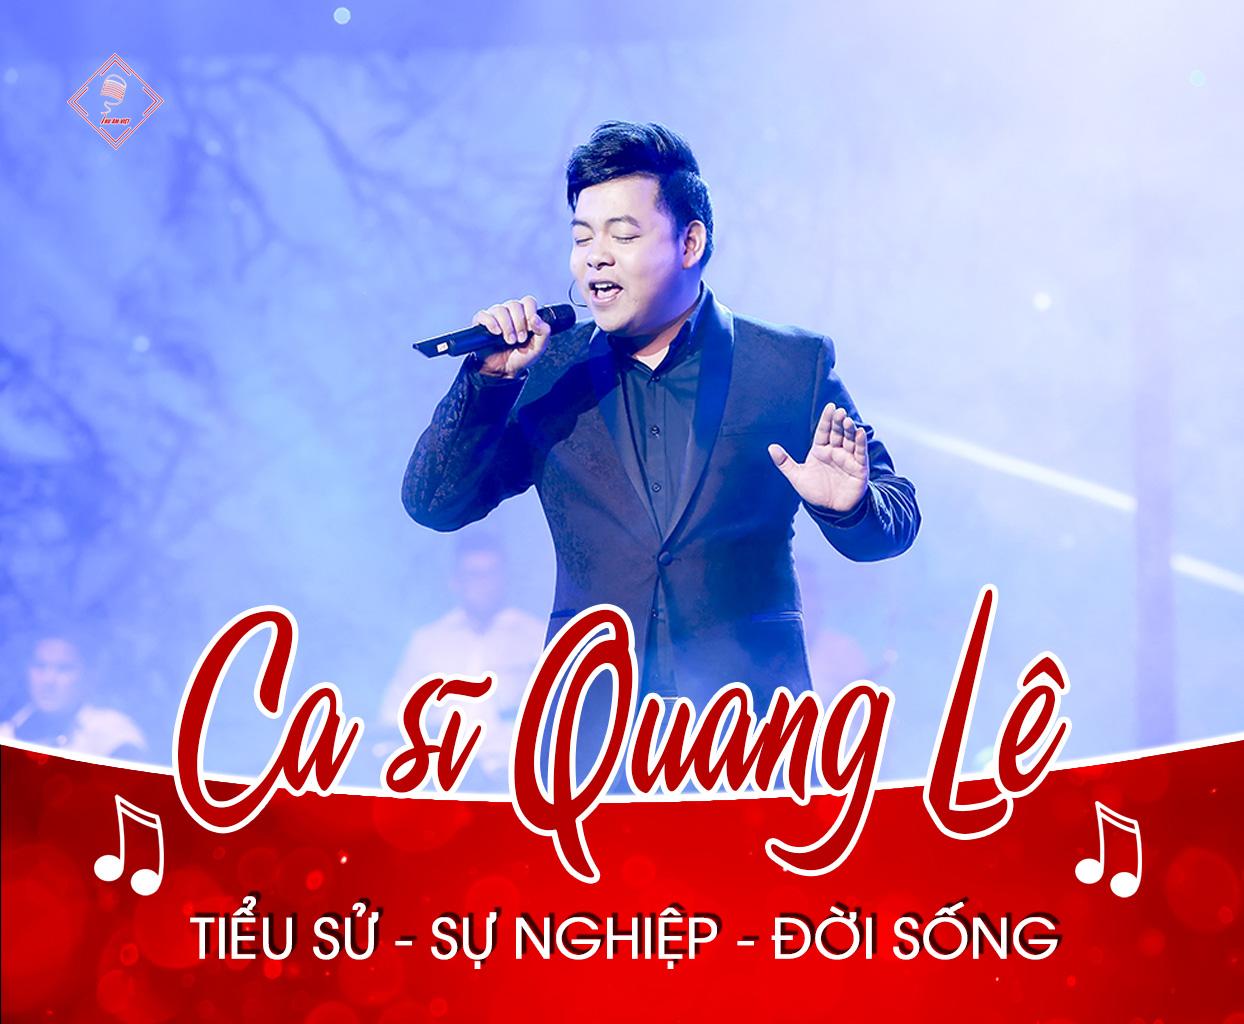 Thông tin tiểu sử - sự nghiệp âm nhạc - đời sống hiện tại ca sĩ Quang Lê